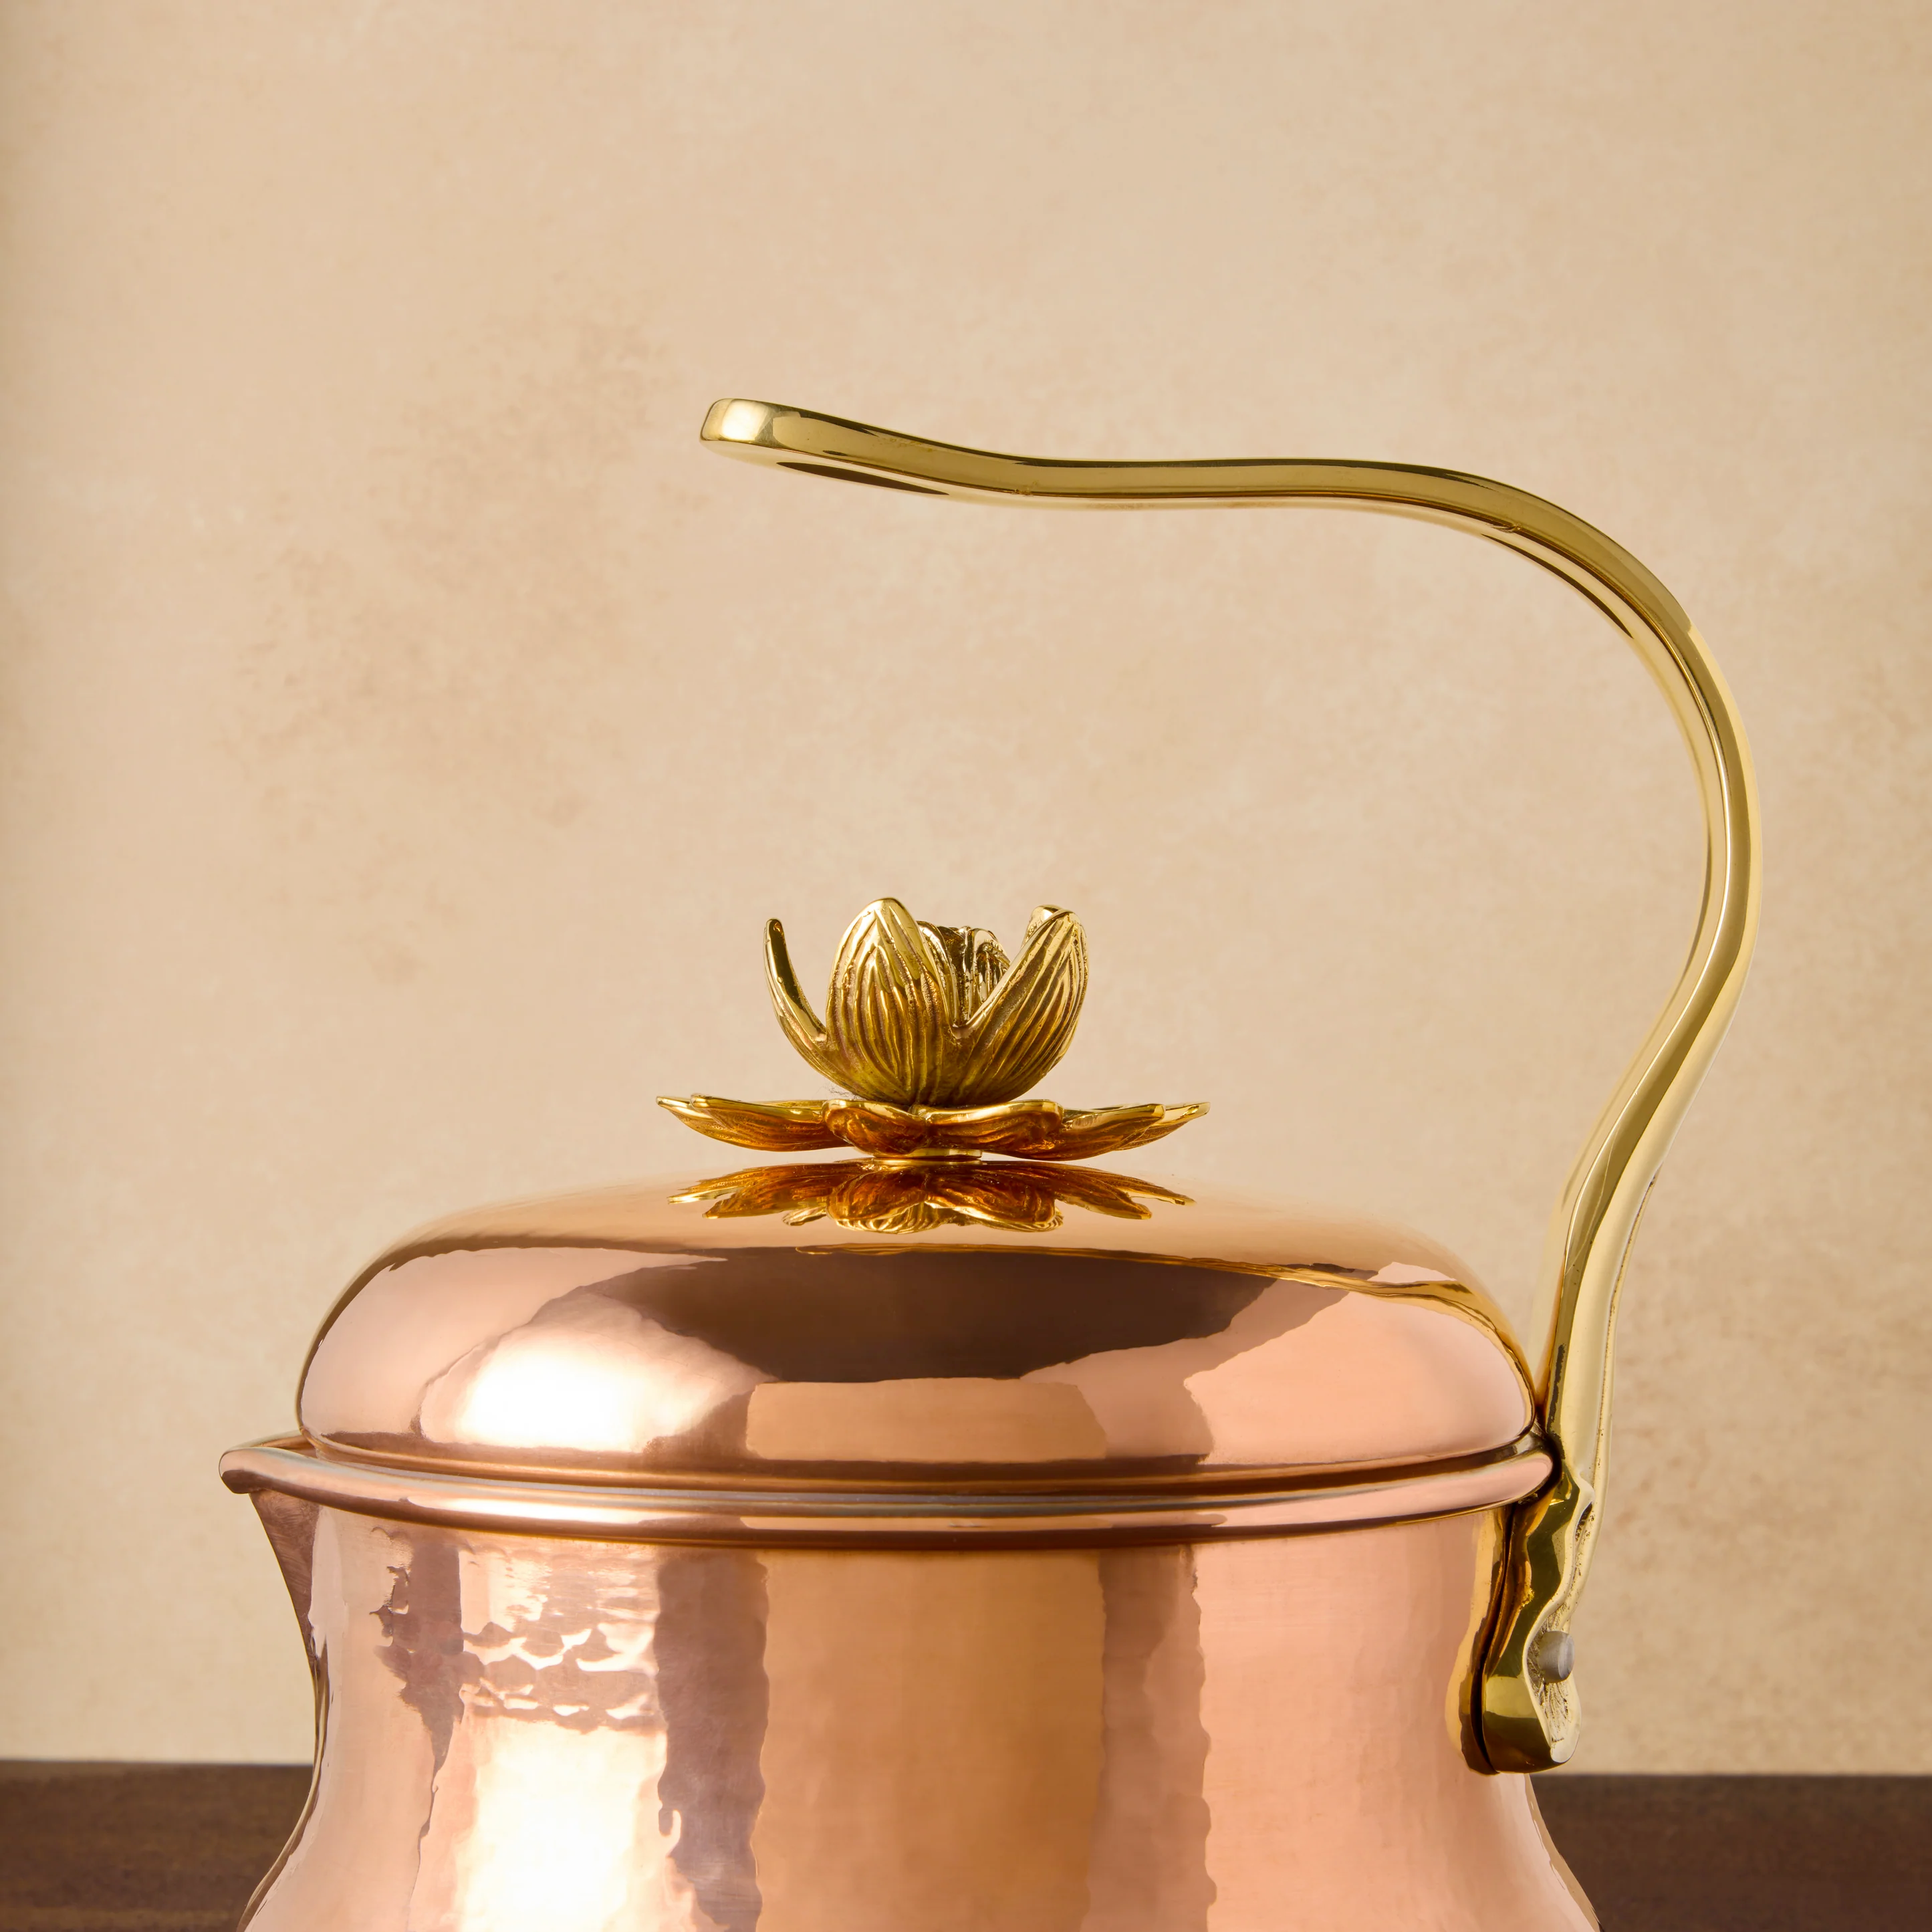 Ruffoni Copper Belly Soup Pot 5.5 qt - Historia